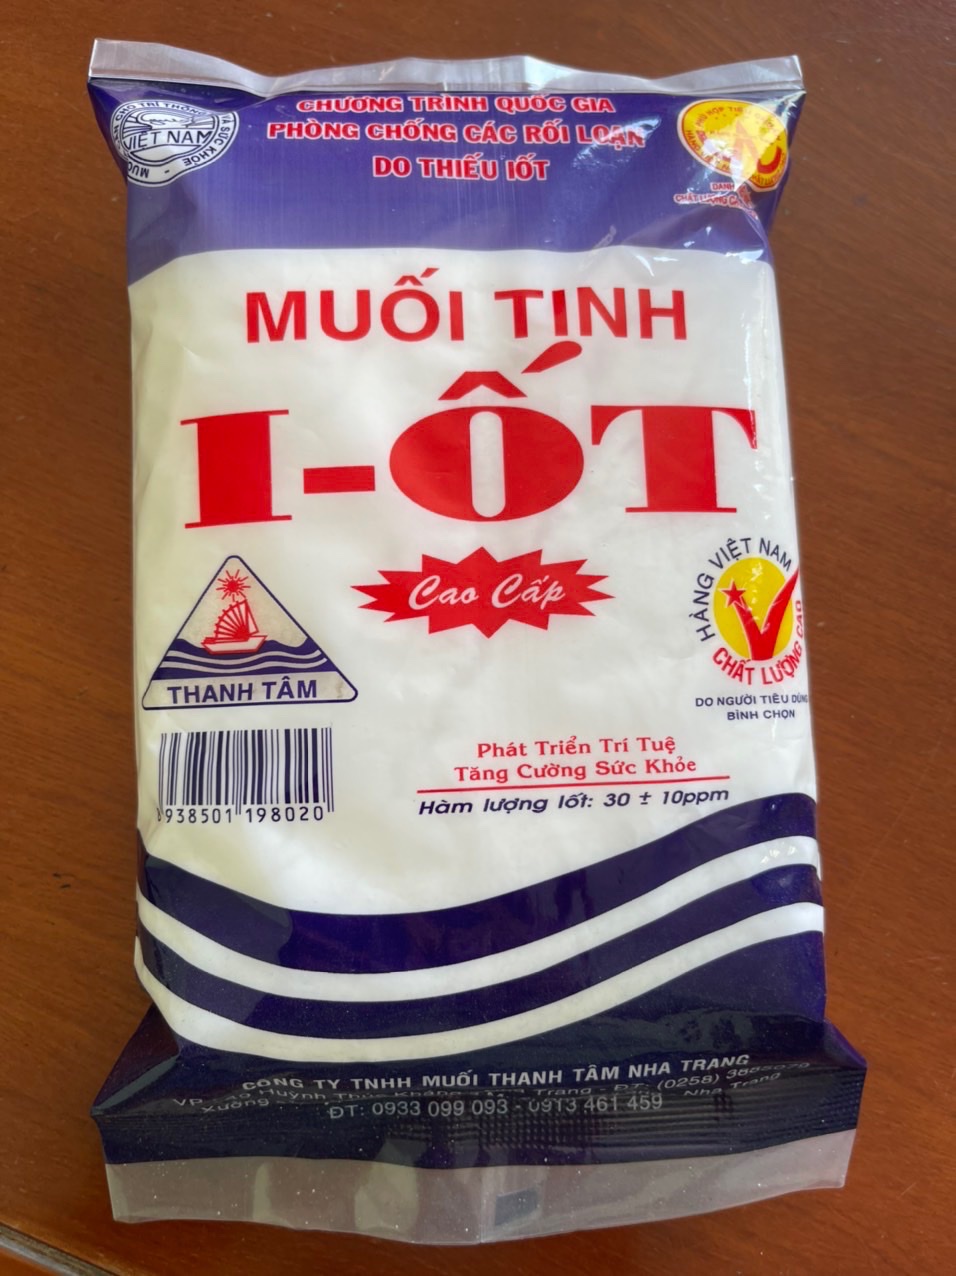 Muối I-ỐT - Muối Thanh Tâm Nha Trang - Công Ty TNHH Muối Thanh Tâm Nha Trang